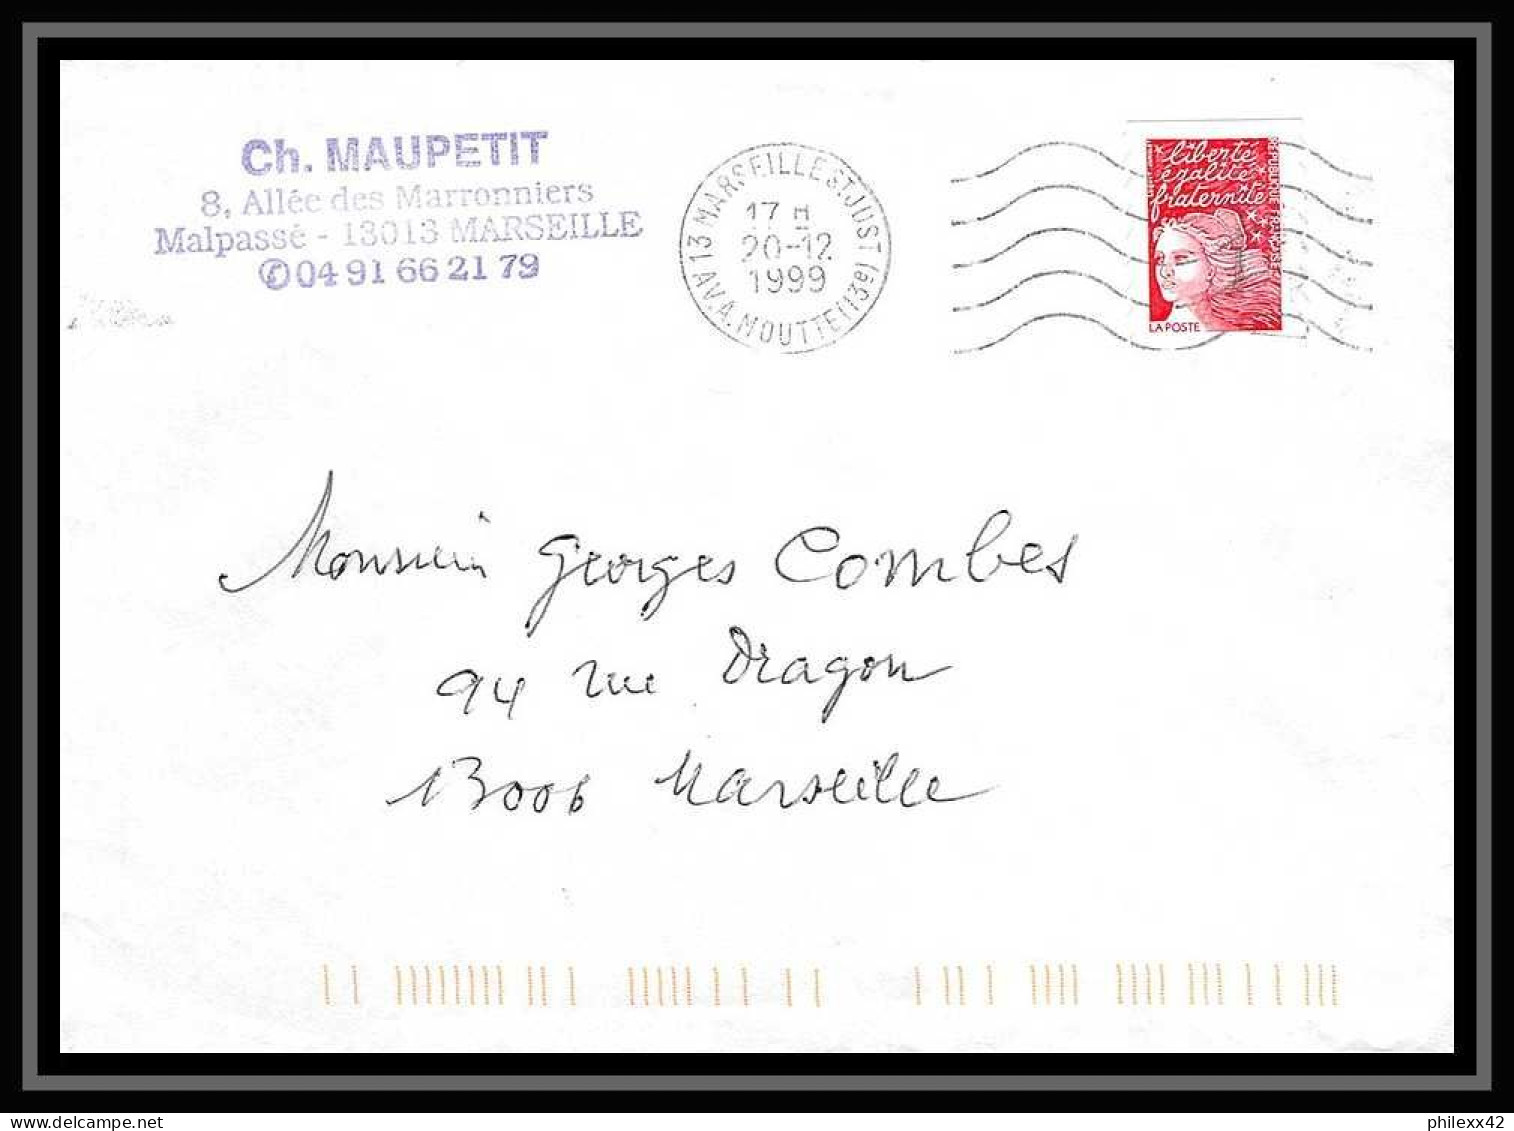 116985 lot de 8 Lettres Bouches du rhone Marseille saint Just